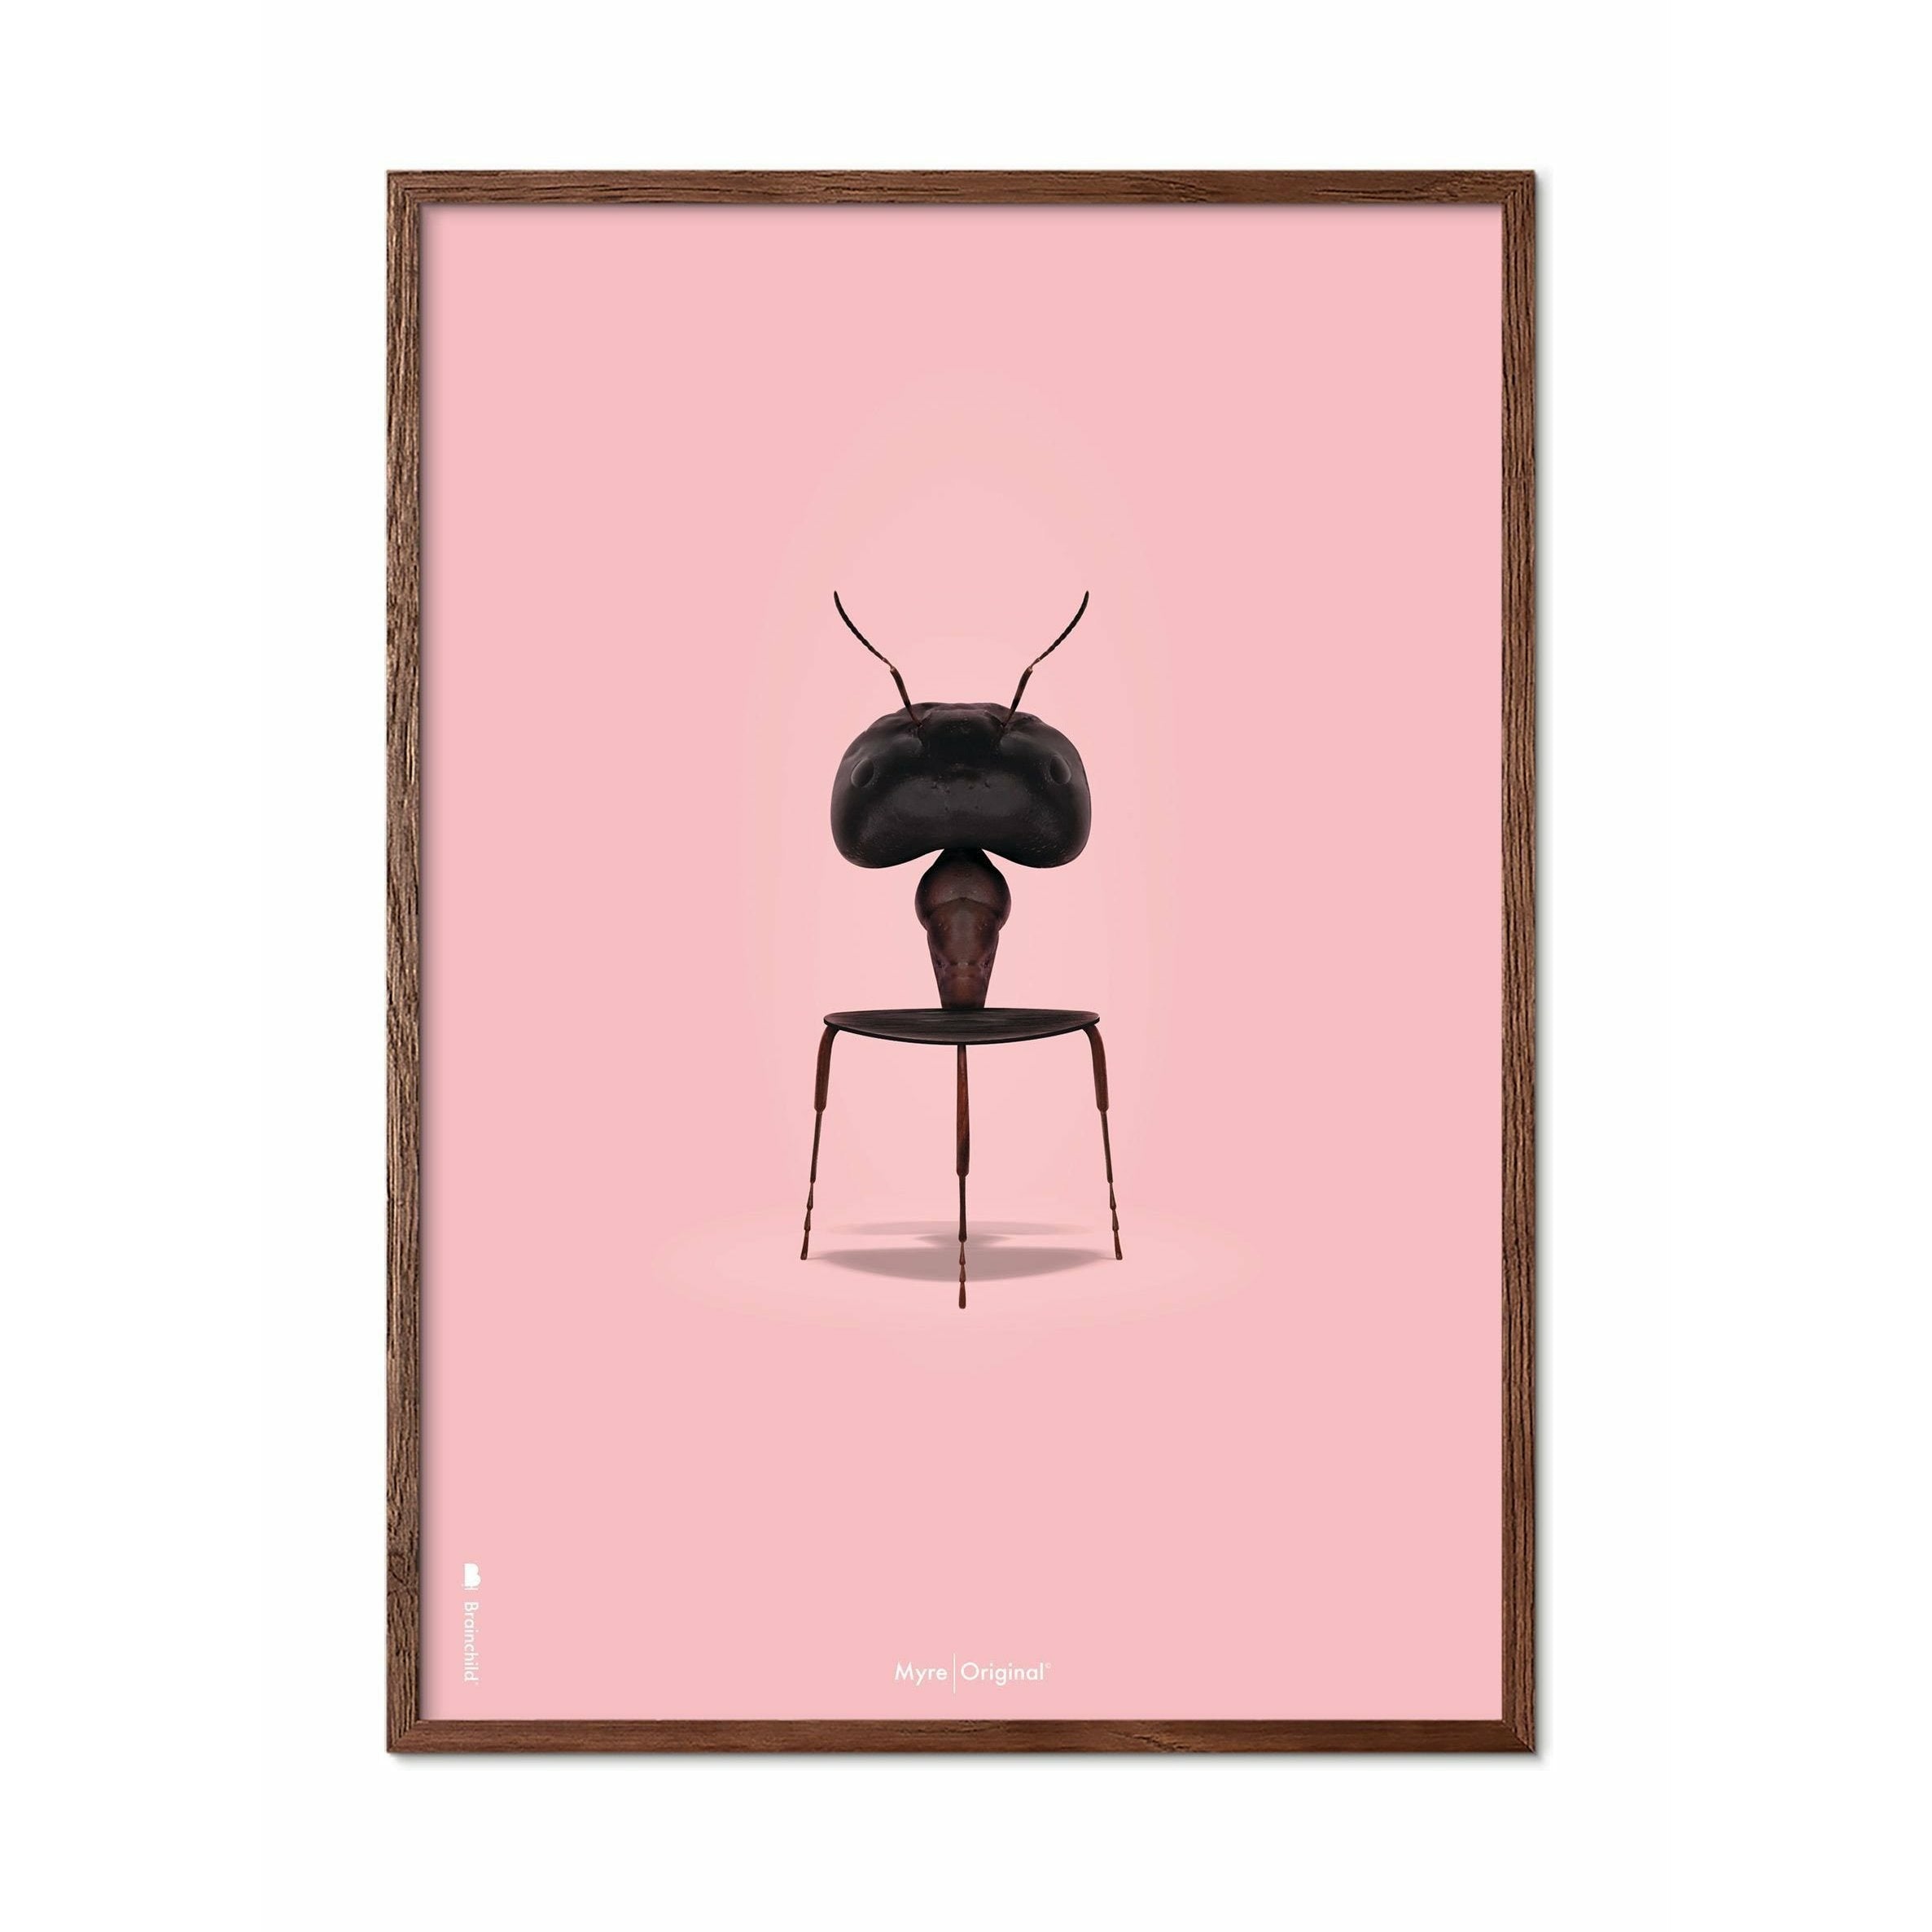 Brainchild Ant Classic plakát, tmavý dřevěný rám 70x100 cm, růžové pozadí